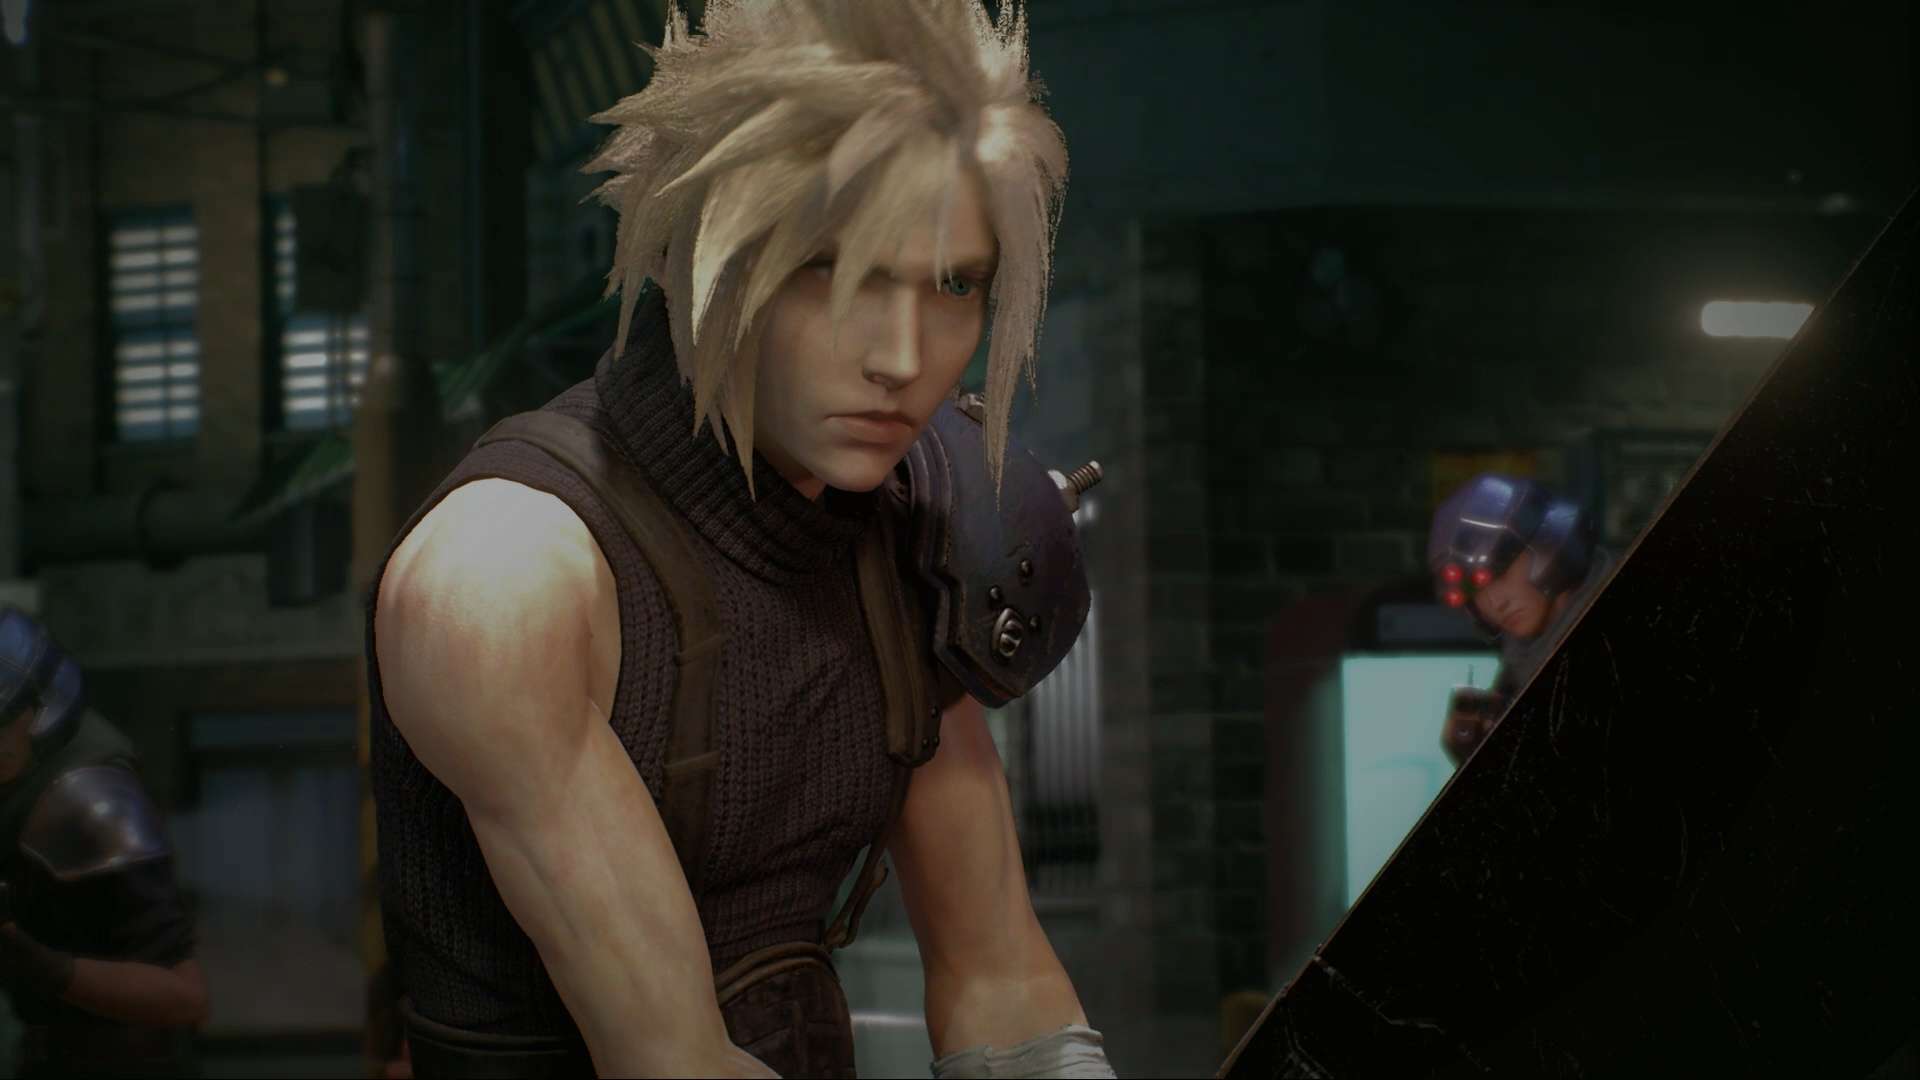 Final Fantasy VII Remake continua siendo el más esperado en Japón